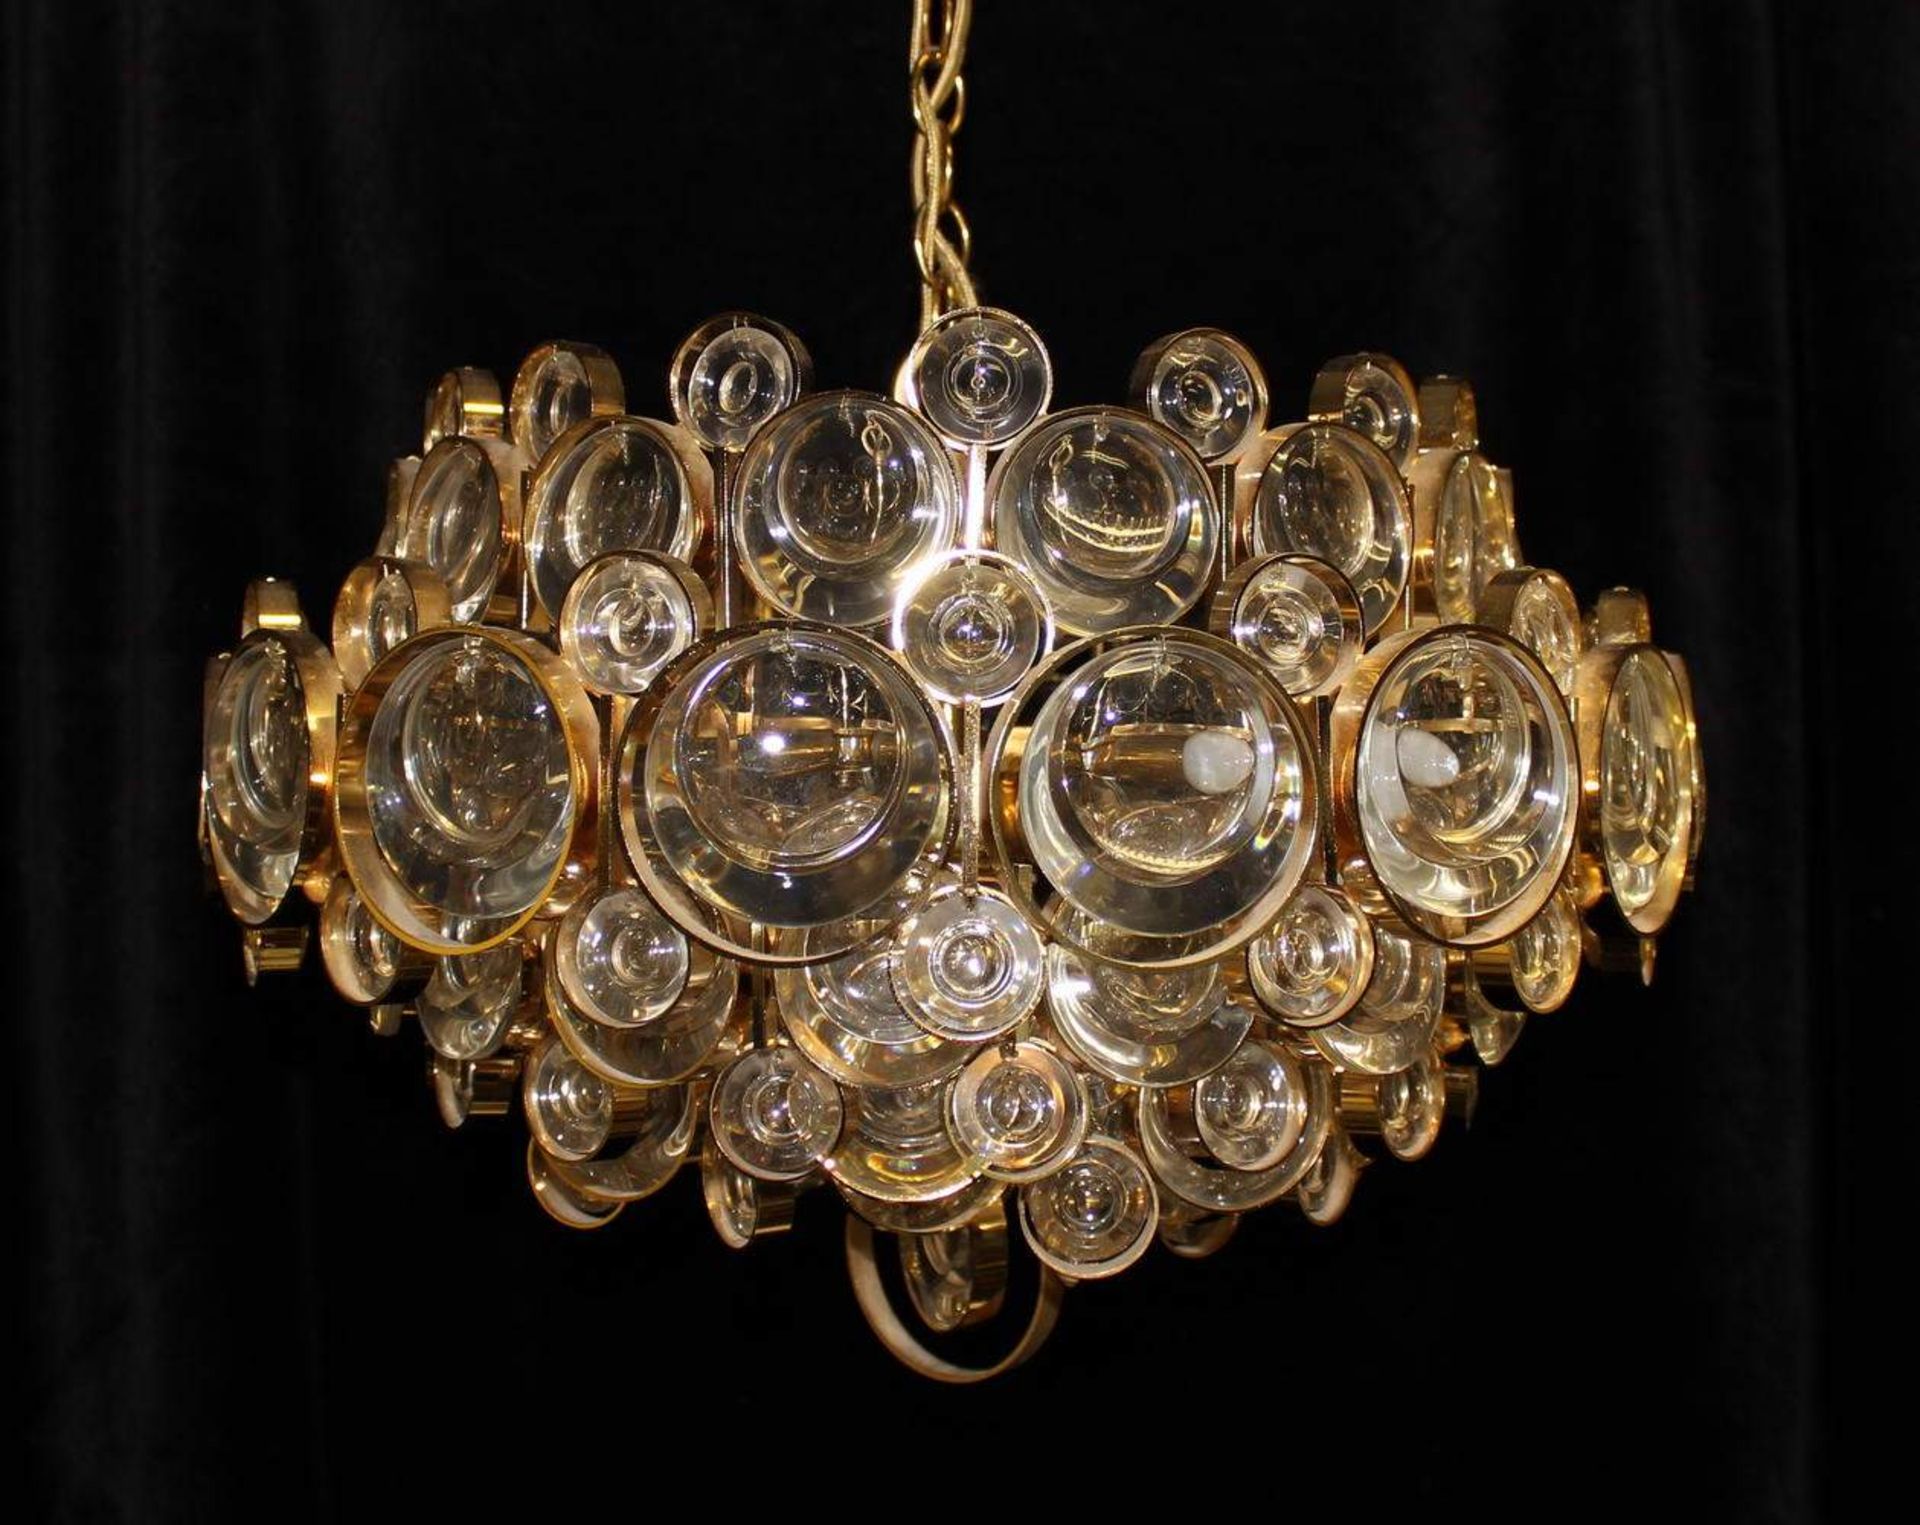 Deckenlampe, 1970er Jahre, Messing, Glas, sechsflammig, elektrifiziert, ca. 80 cm hoch, ø 40 cm